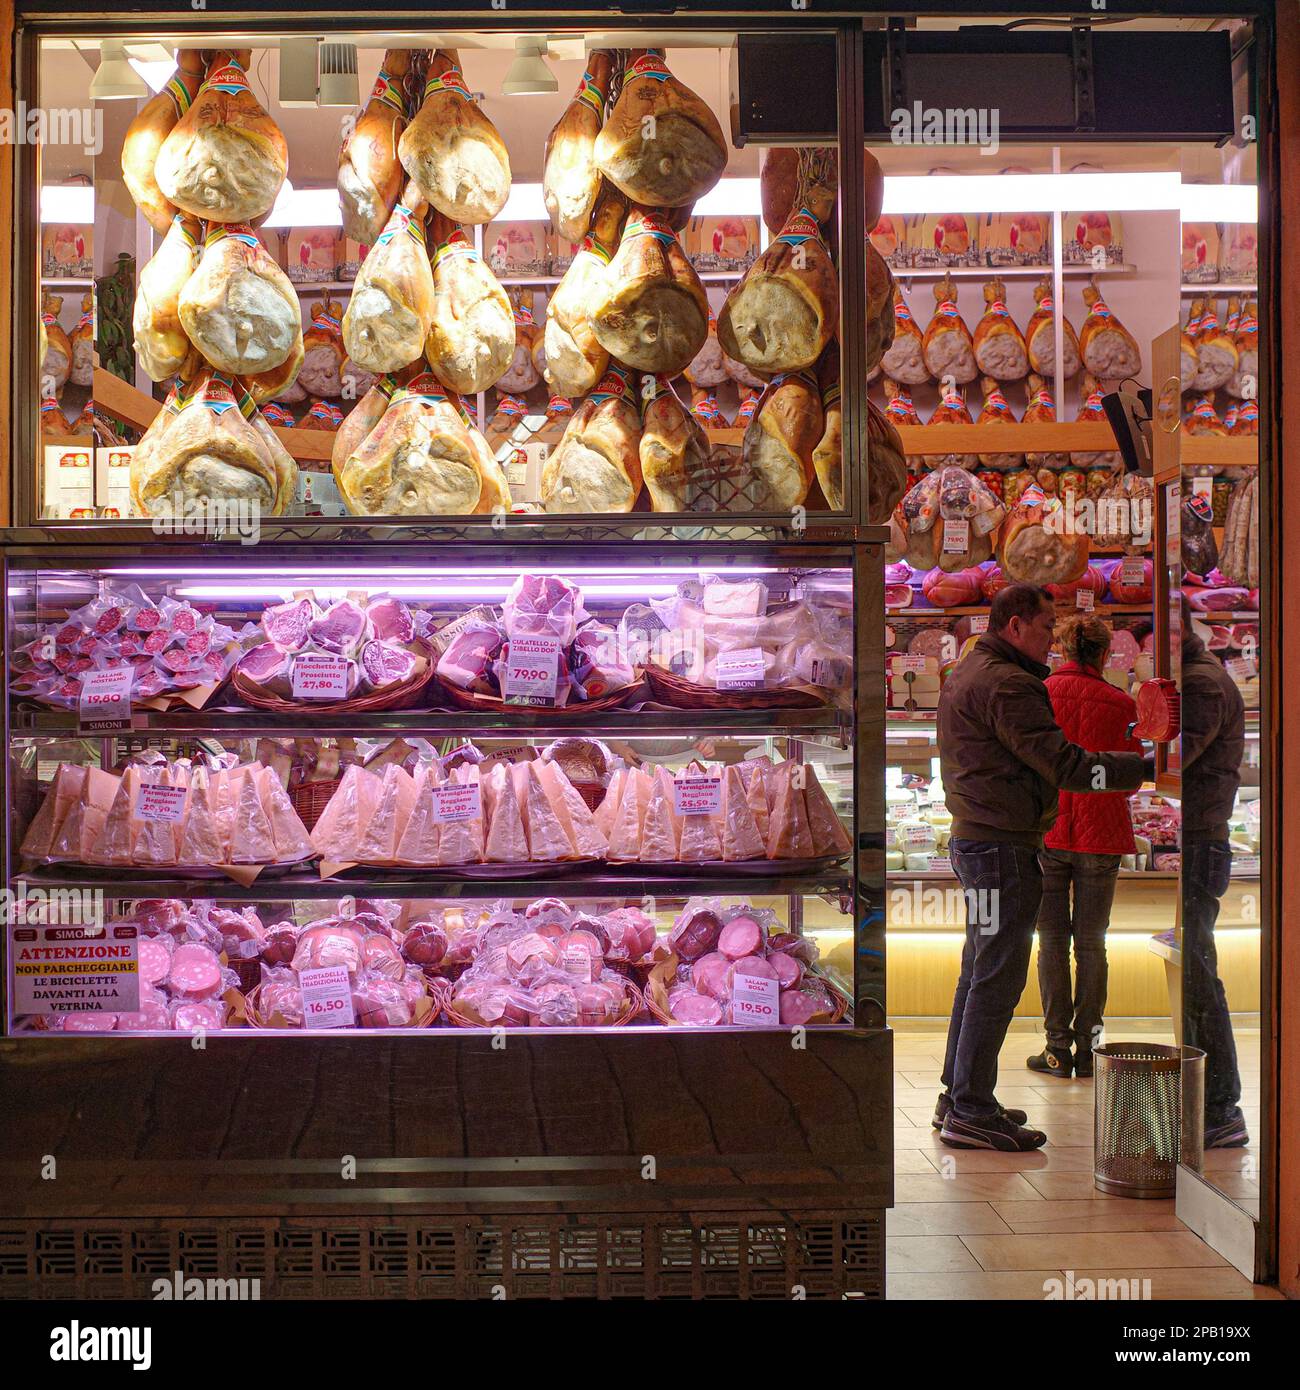 Bologna, Italy - 16 Nov, 2022: Traditional Delicatessan food market near Maggiore square Stock Photo